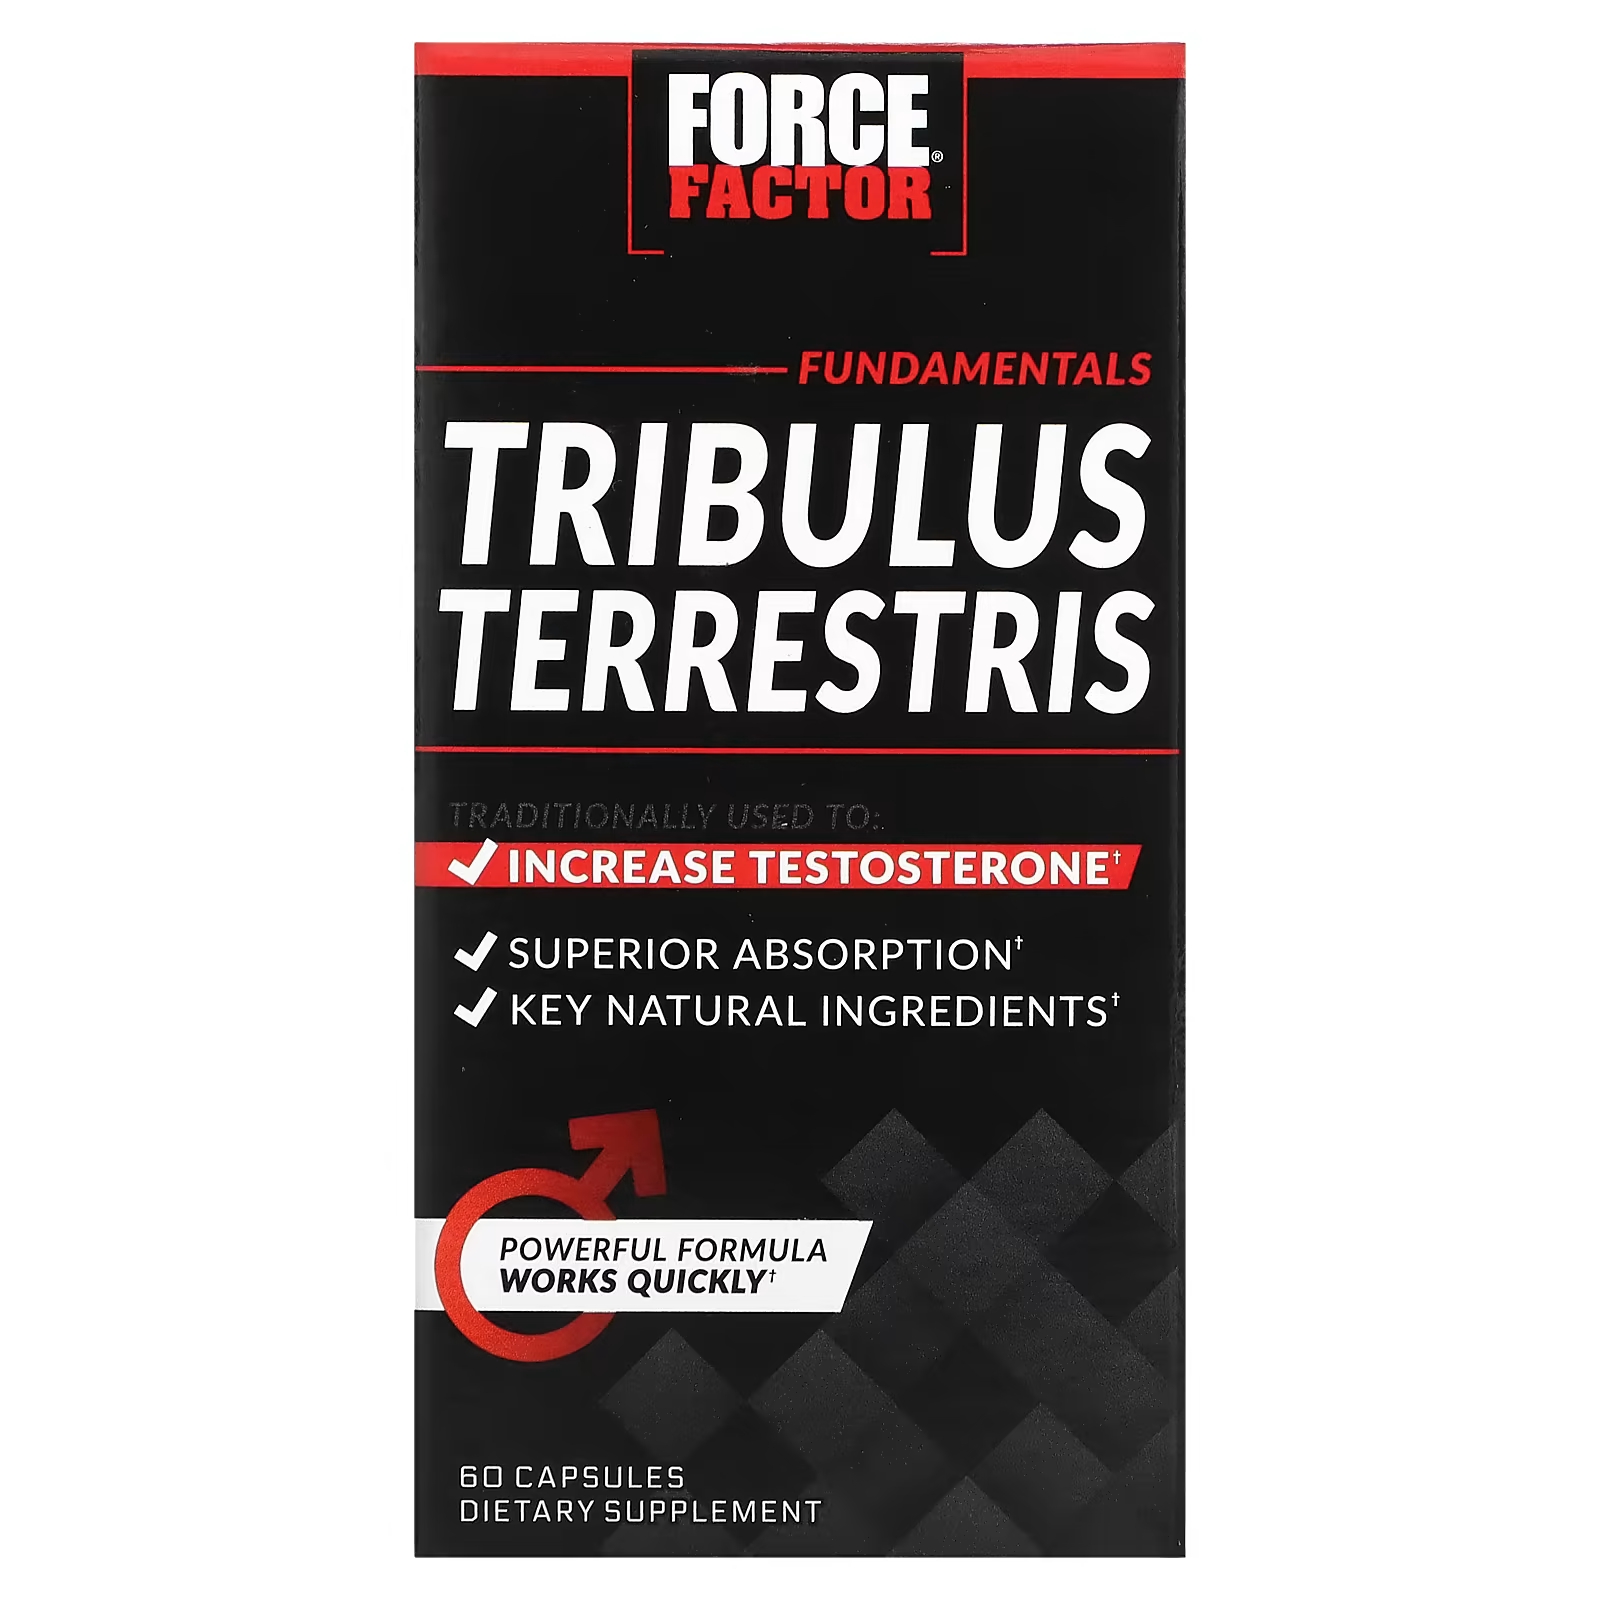 Force Factor Force Factor Tribulus Terrestris Бустер тестостерона, 60 капсул force factor prostate натуральное средство для здоровья простаты 60 удобных капсул